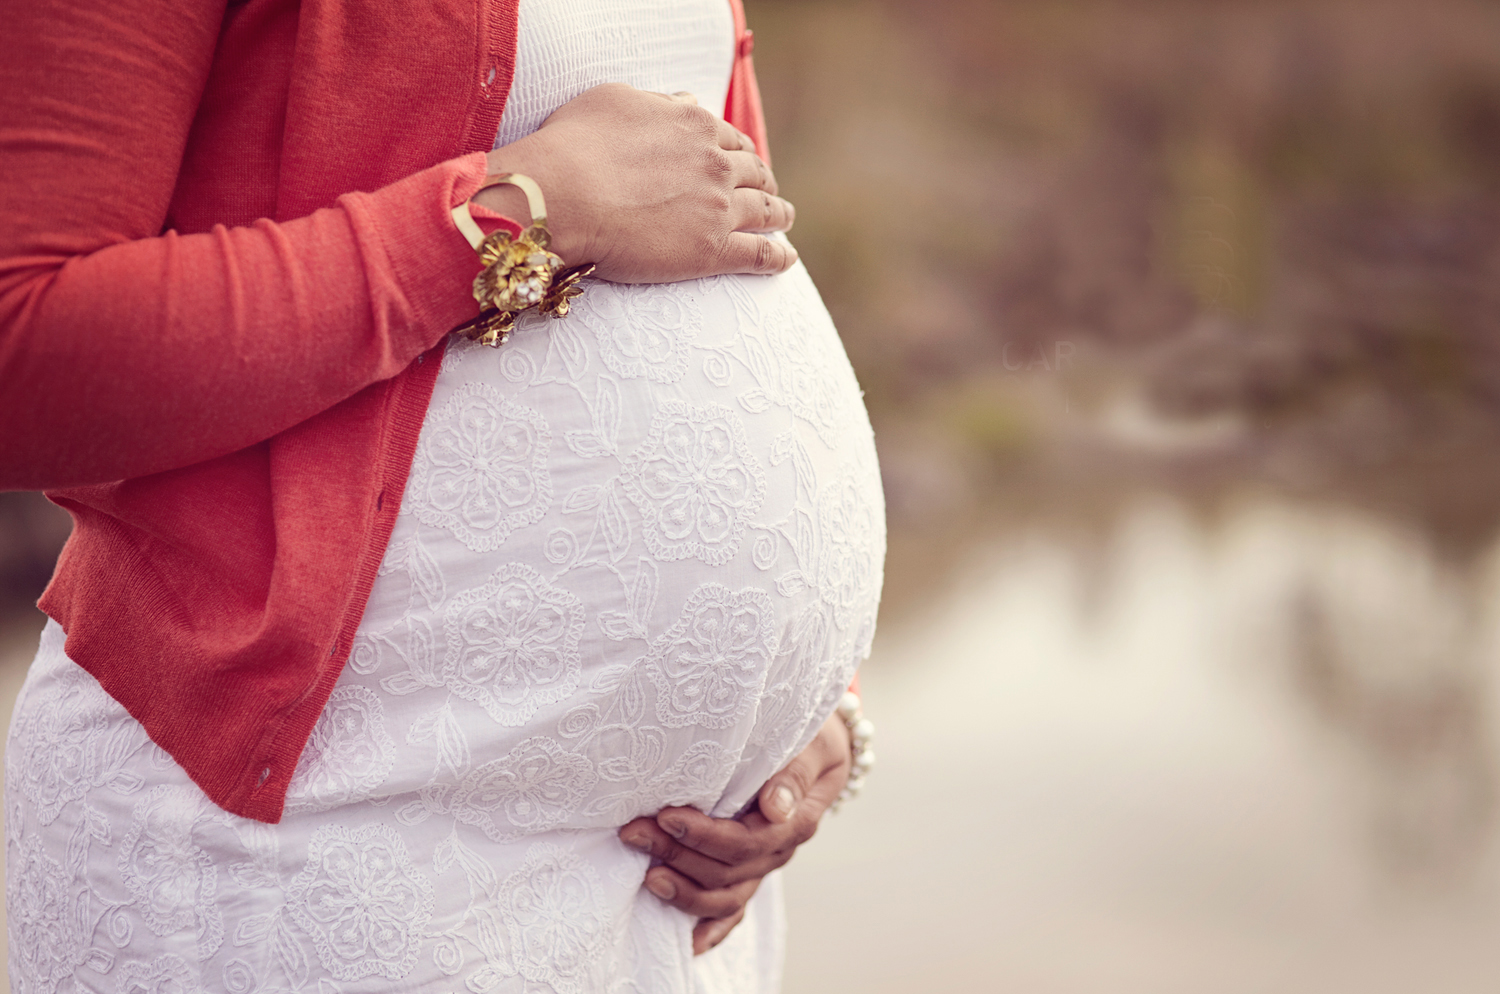 ارتباط کم کاری تیروئید بارداری و اختلال بیش فعالی کودک